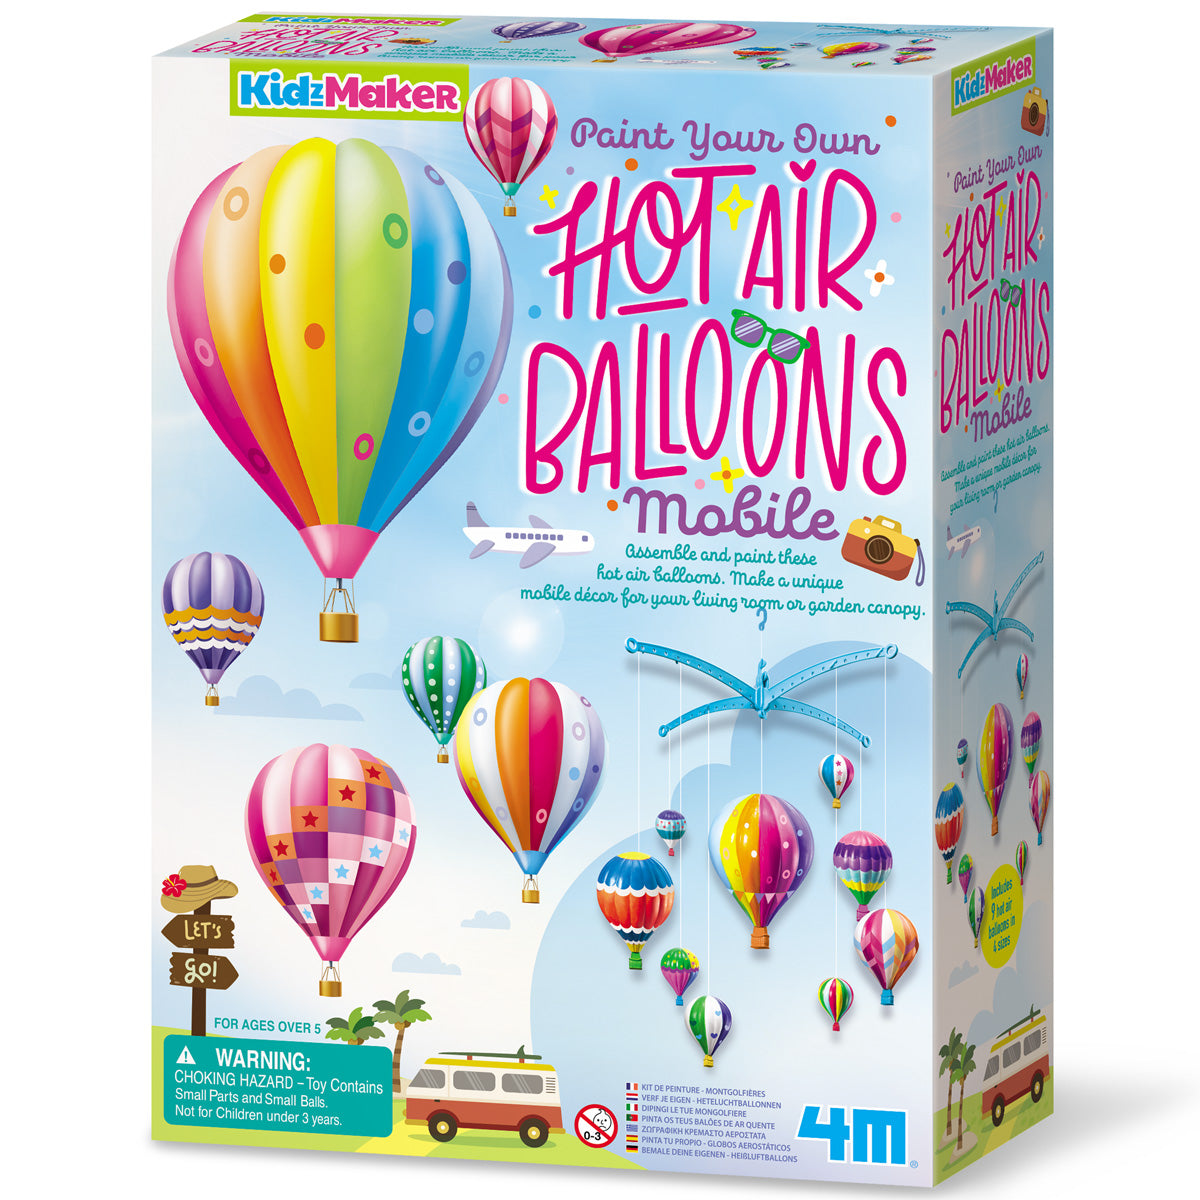 KidzMaker - PYO Hot Air Balloons Mobile